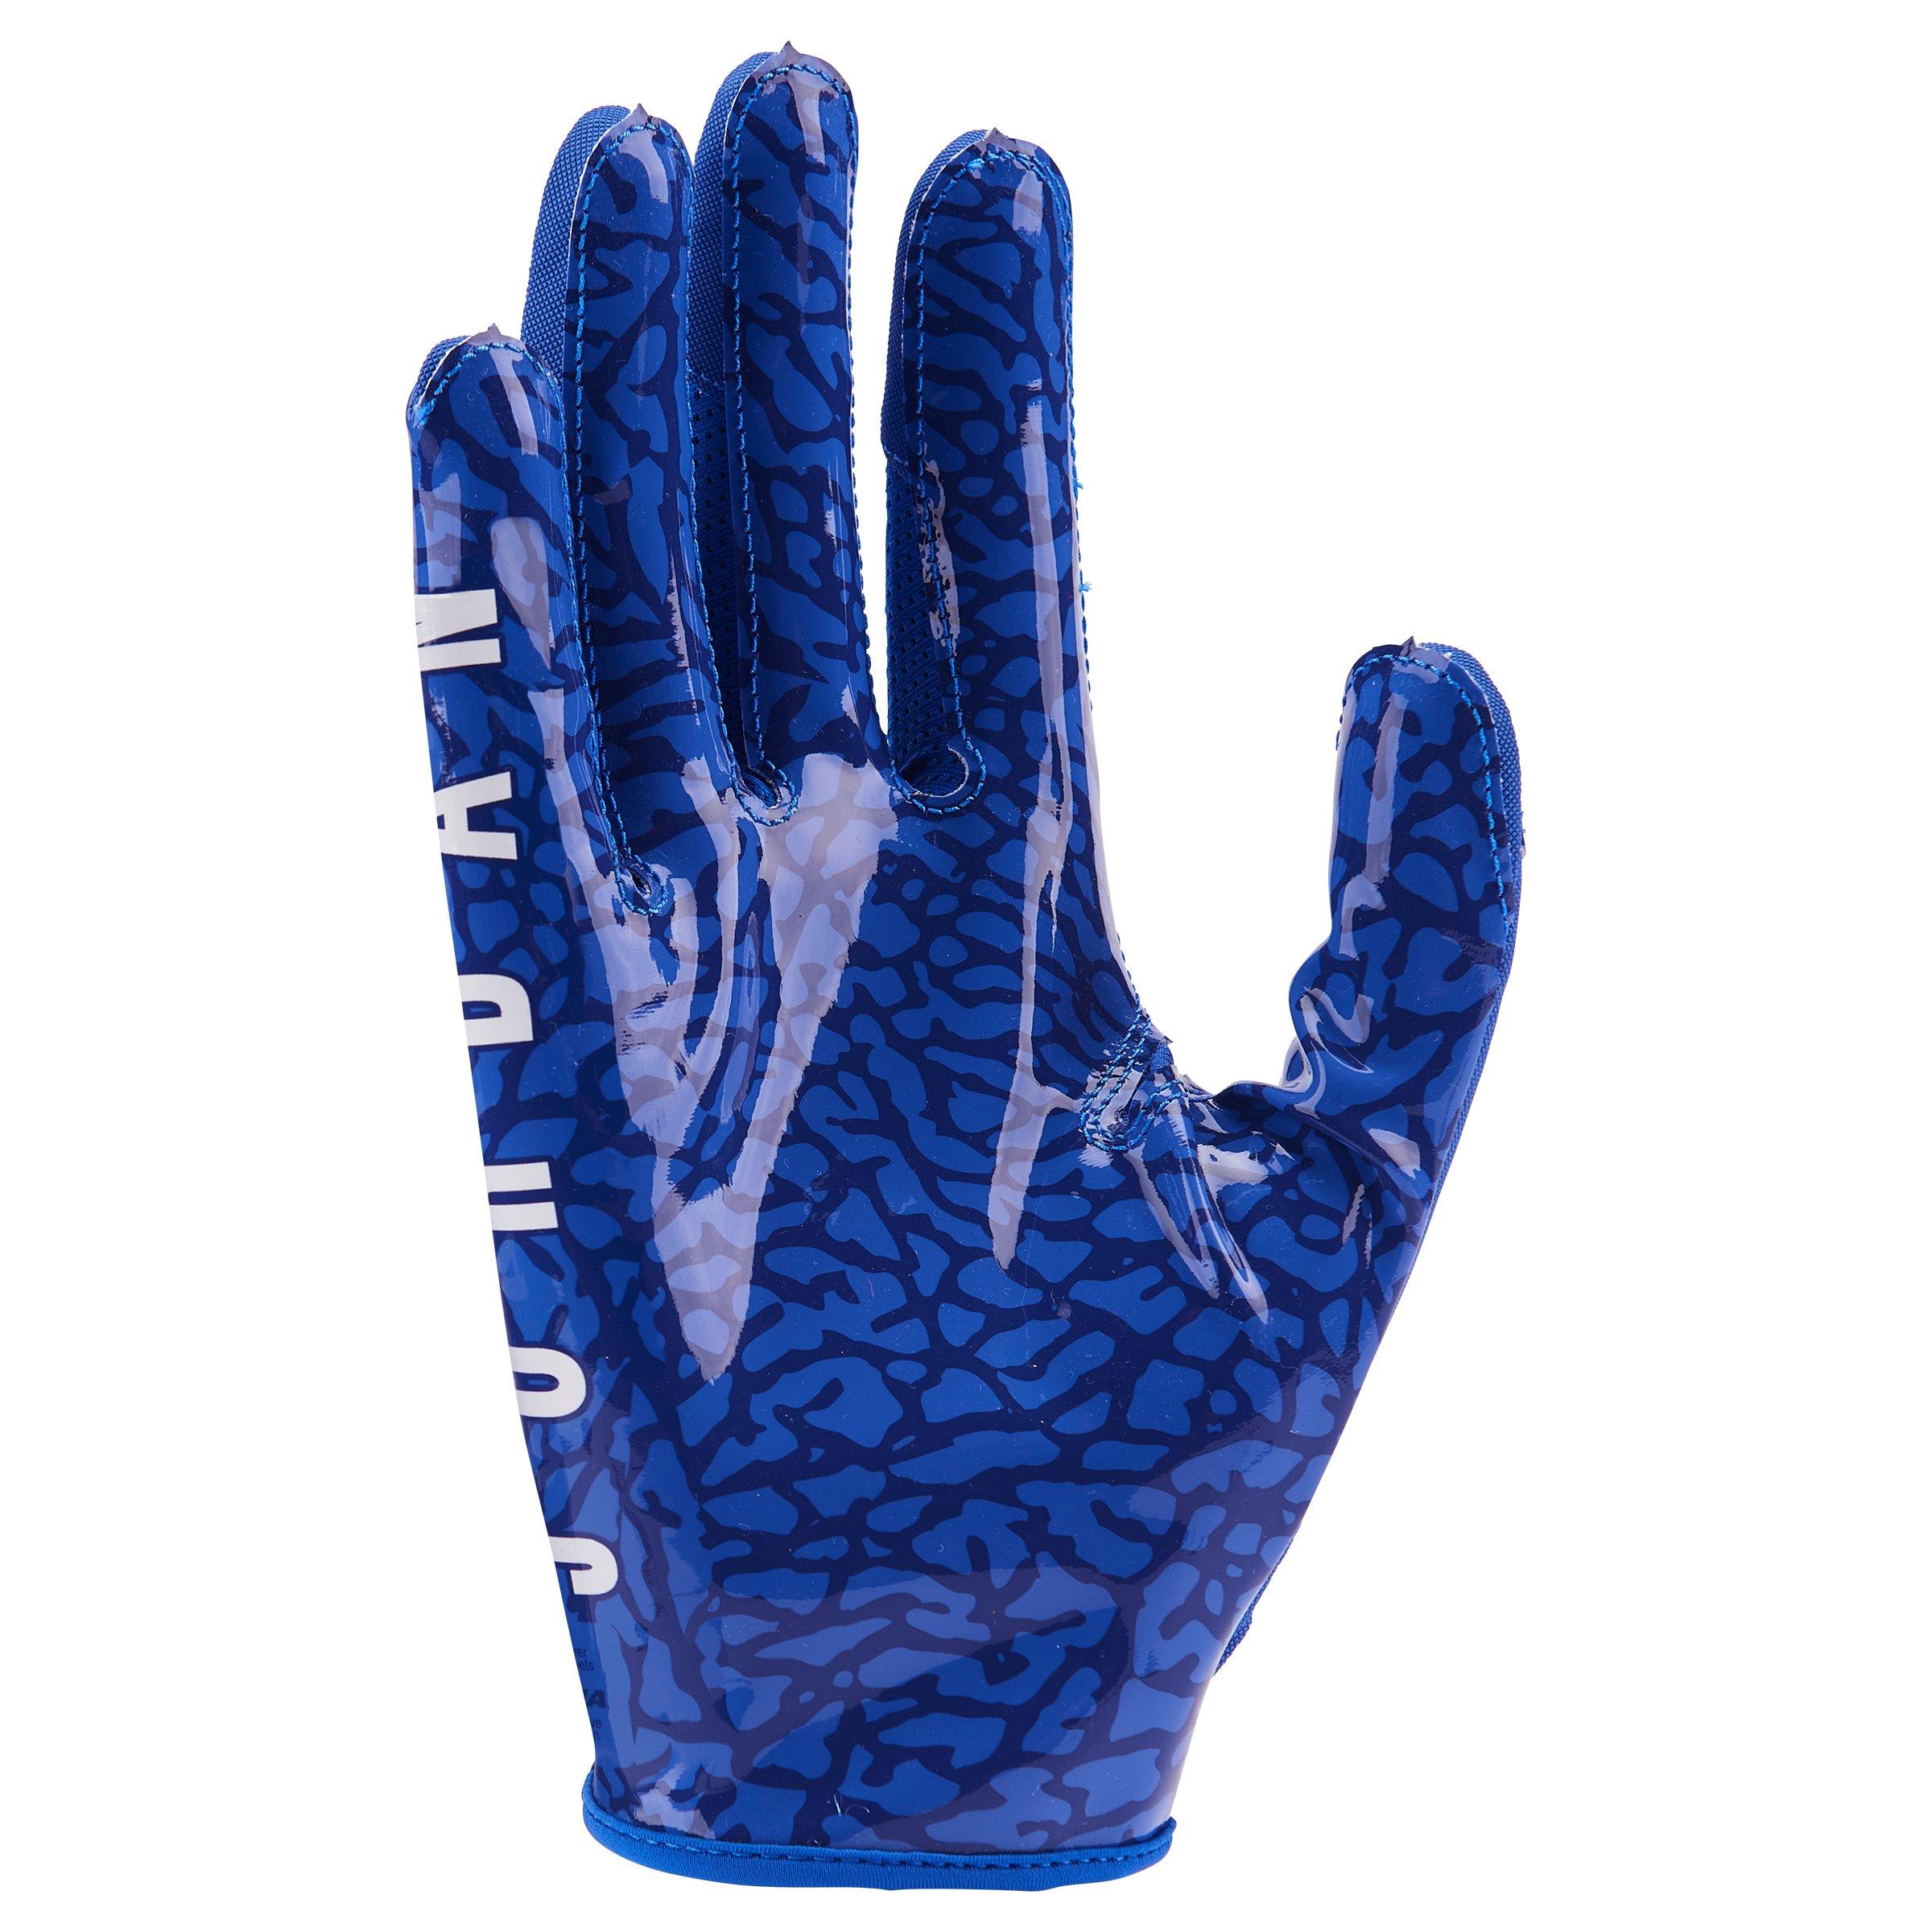 Jet 7.0 Football Gloves